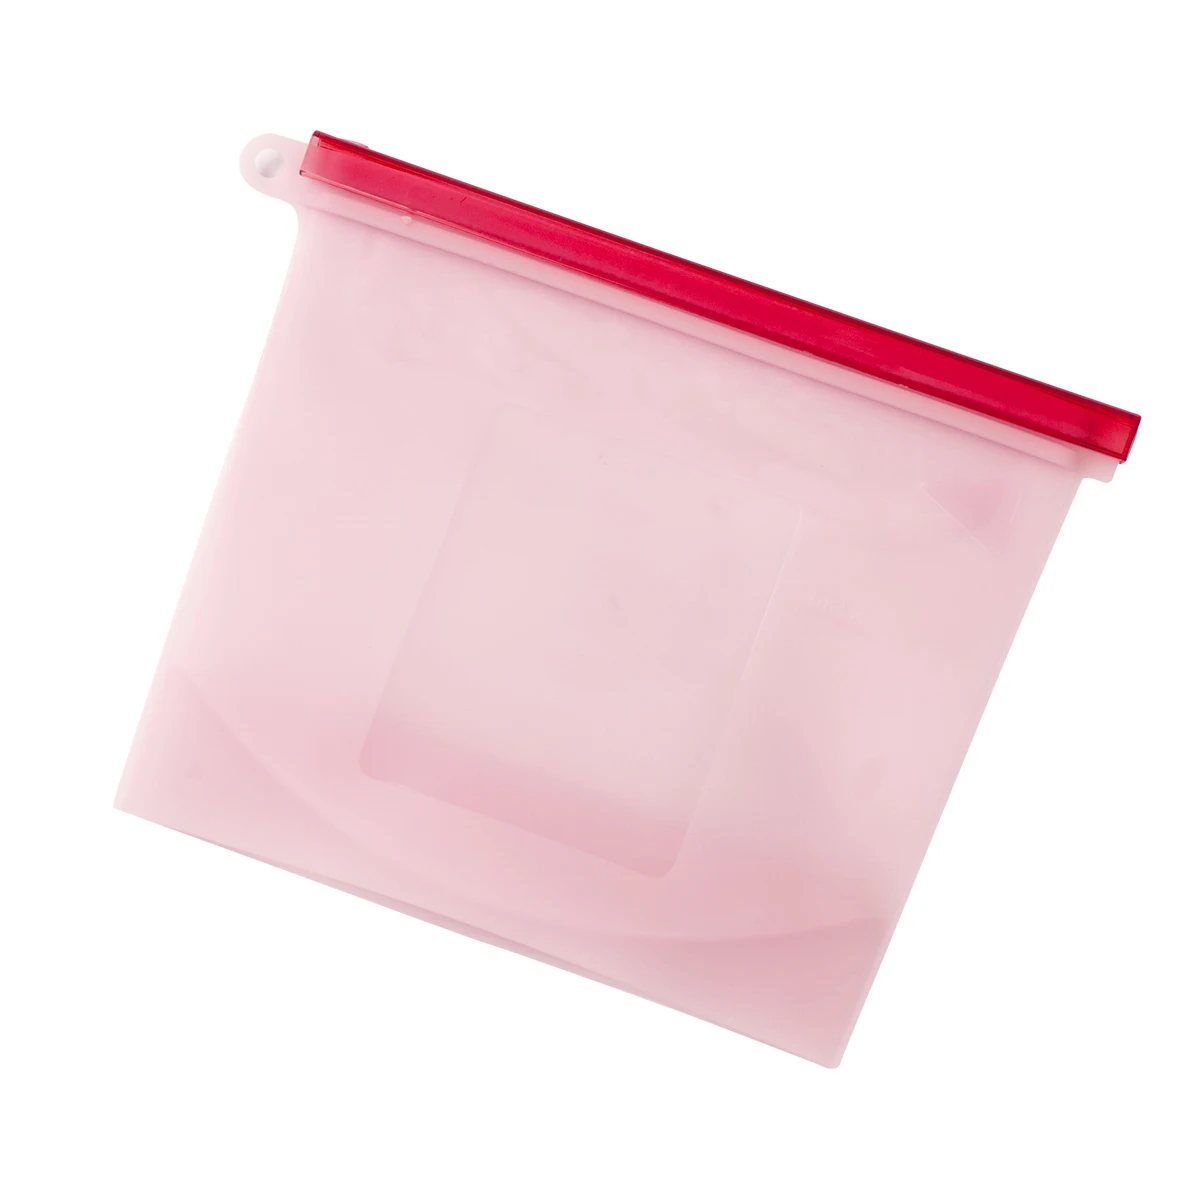 2 шт./лот 1.5L кухня хранения многоразовая застежка-молния вакуумный мешок для хранения корзины пищевой силикон еда морозильник свежее сохранение - Цвет: Красный